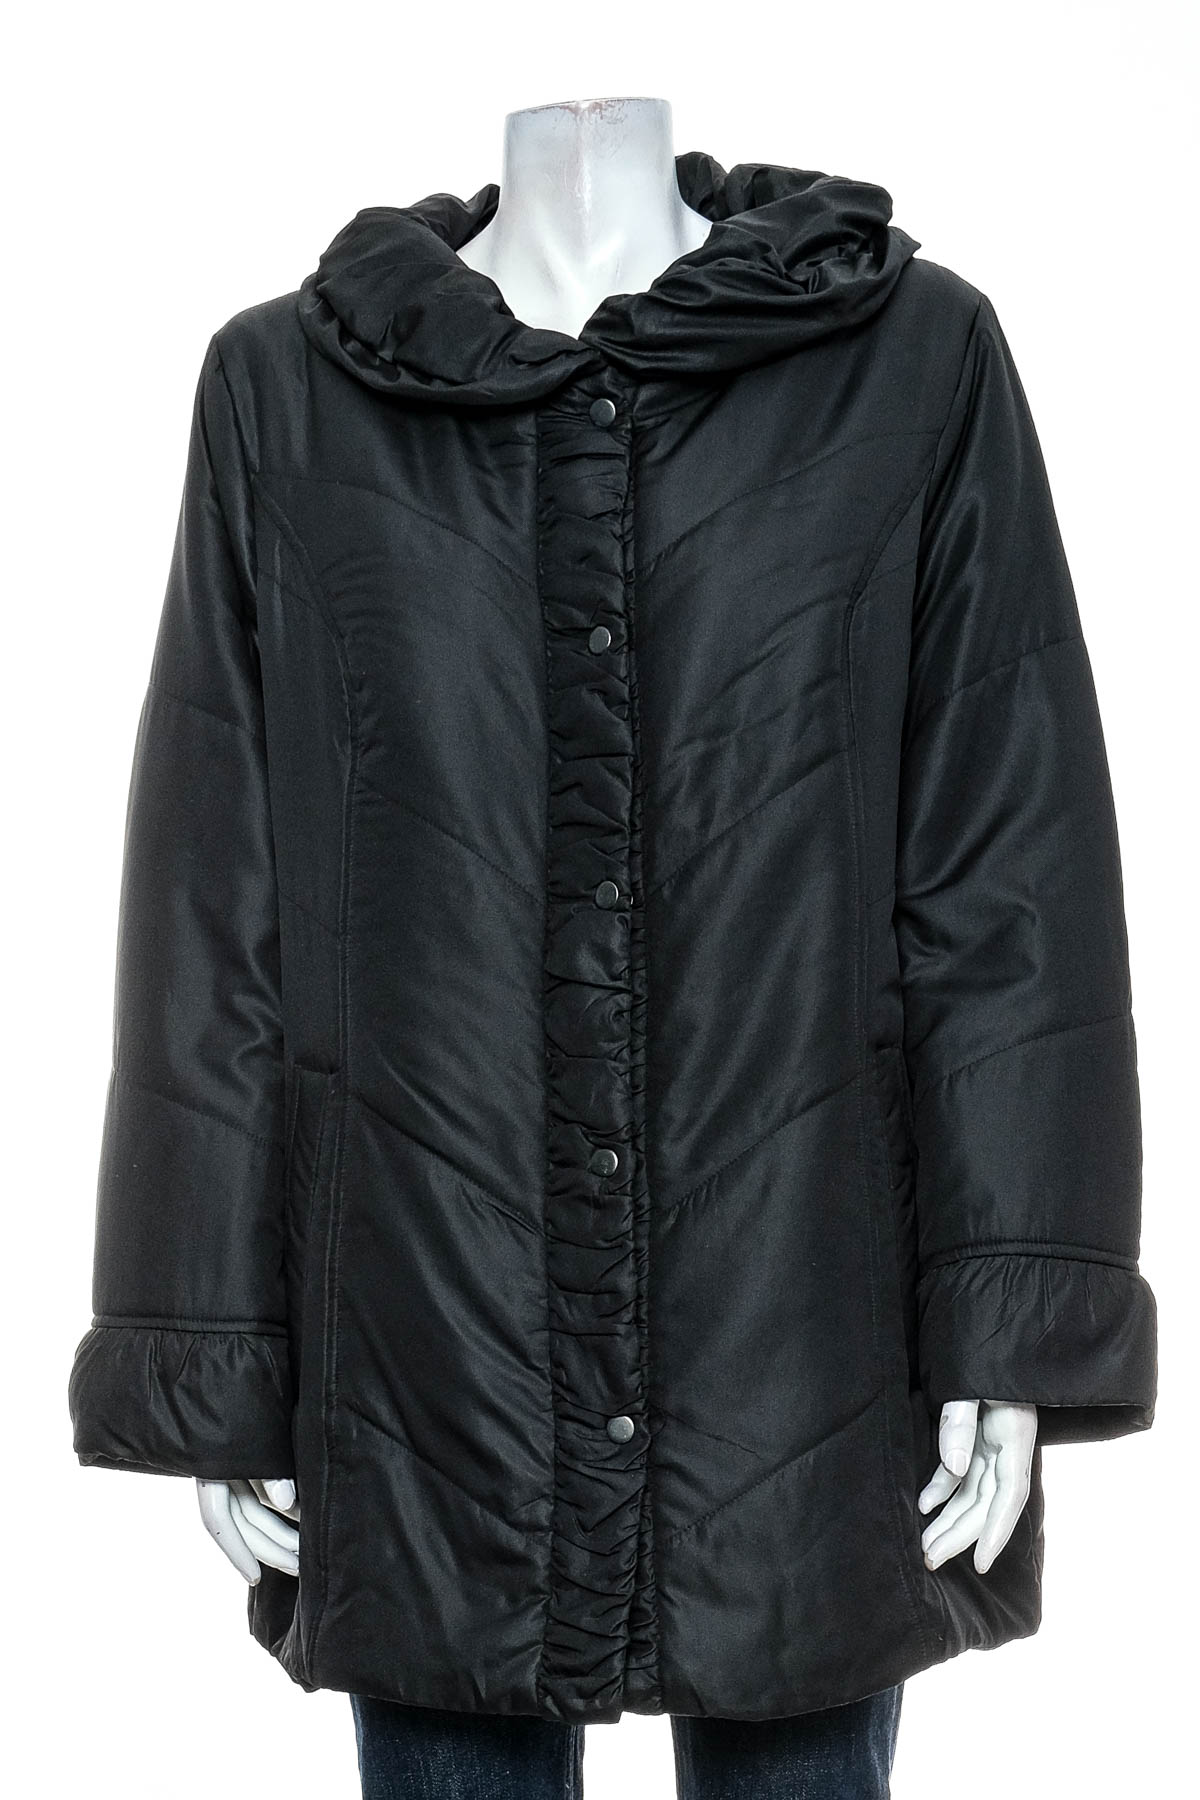 Female jacket - AproductZ - 0